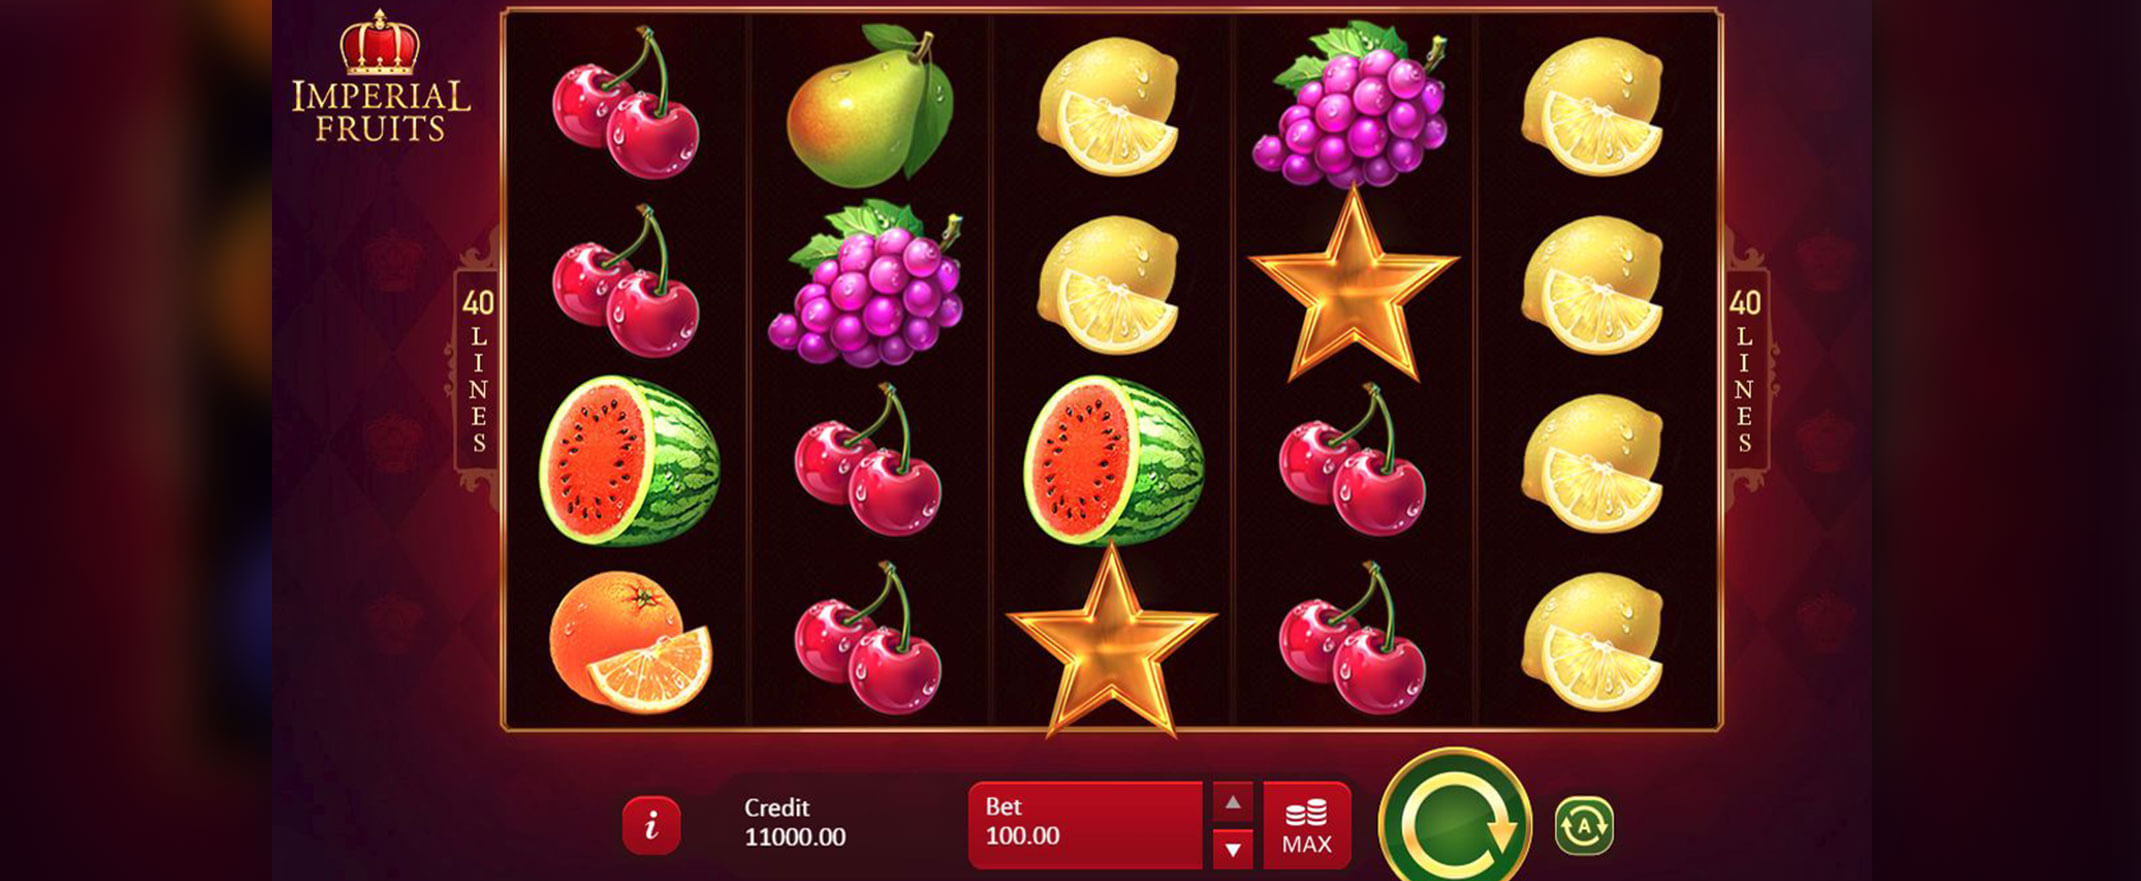 Imperial Fruits: 40 Lines Spiel von Playson